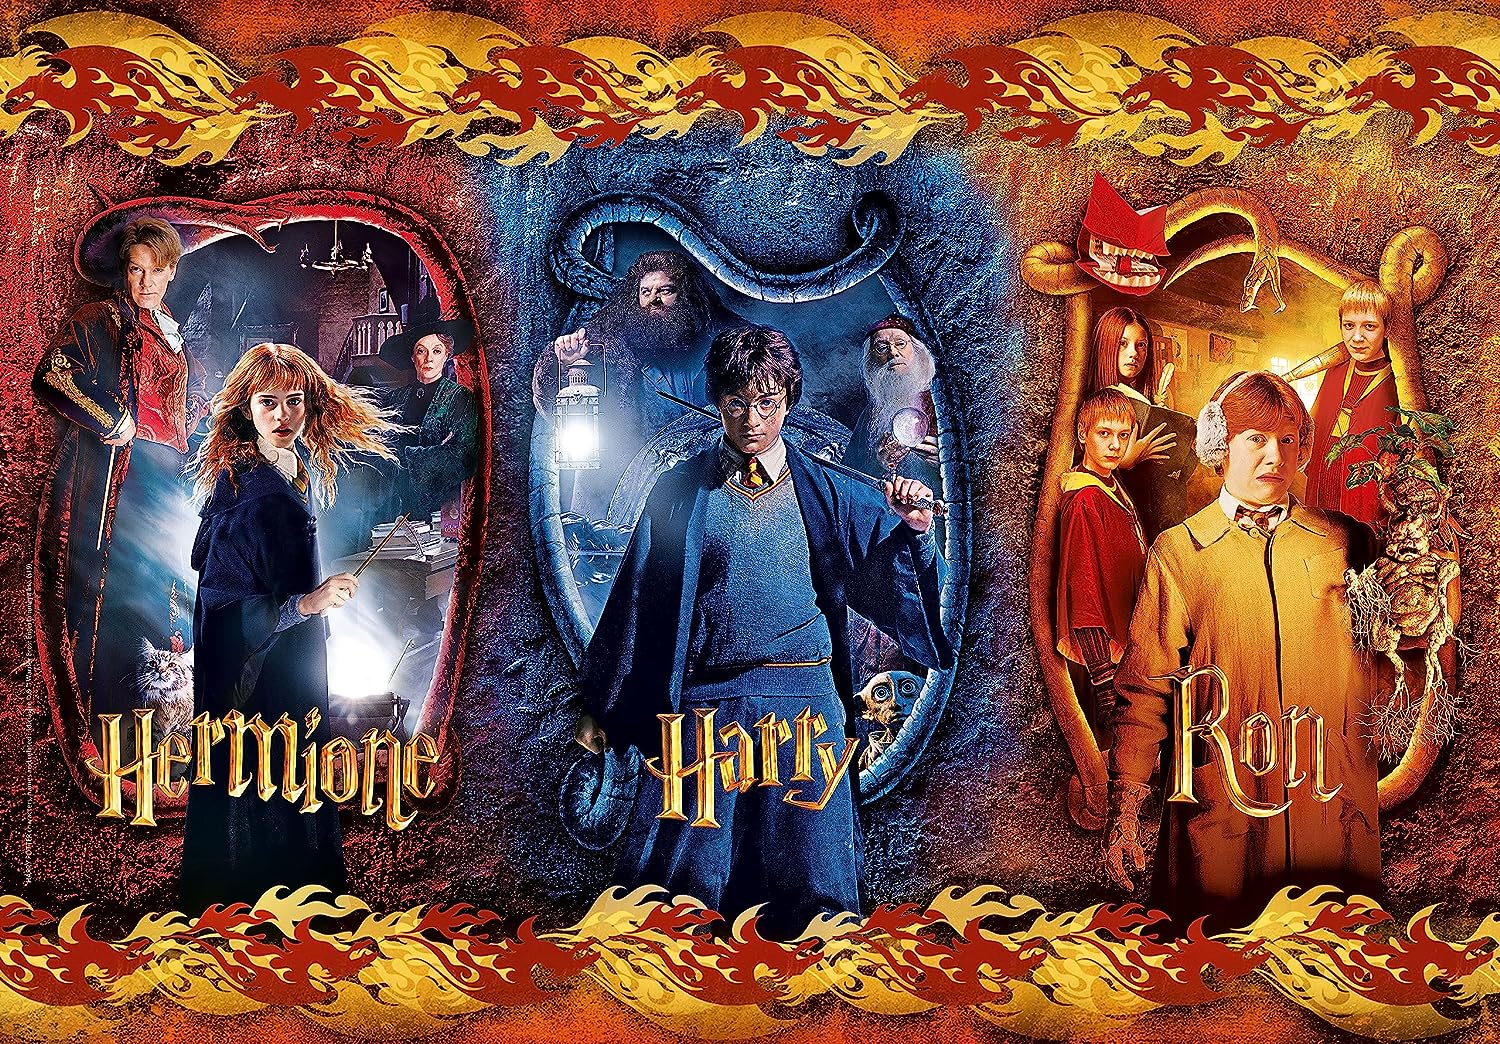 Puzzle 104 Piezas | Harry, Hermione y Ron Clementoni